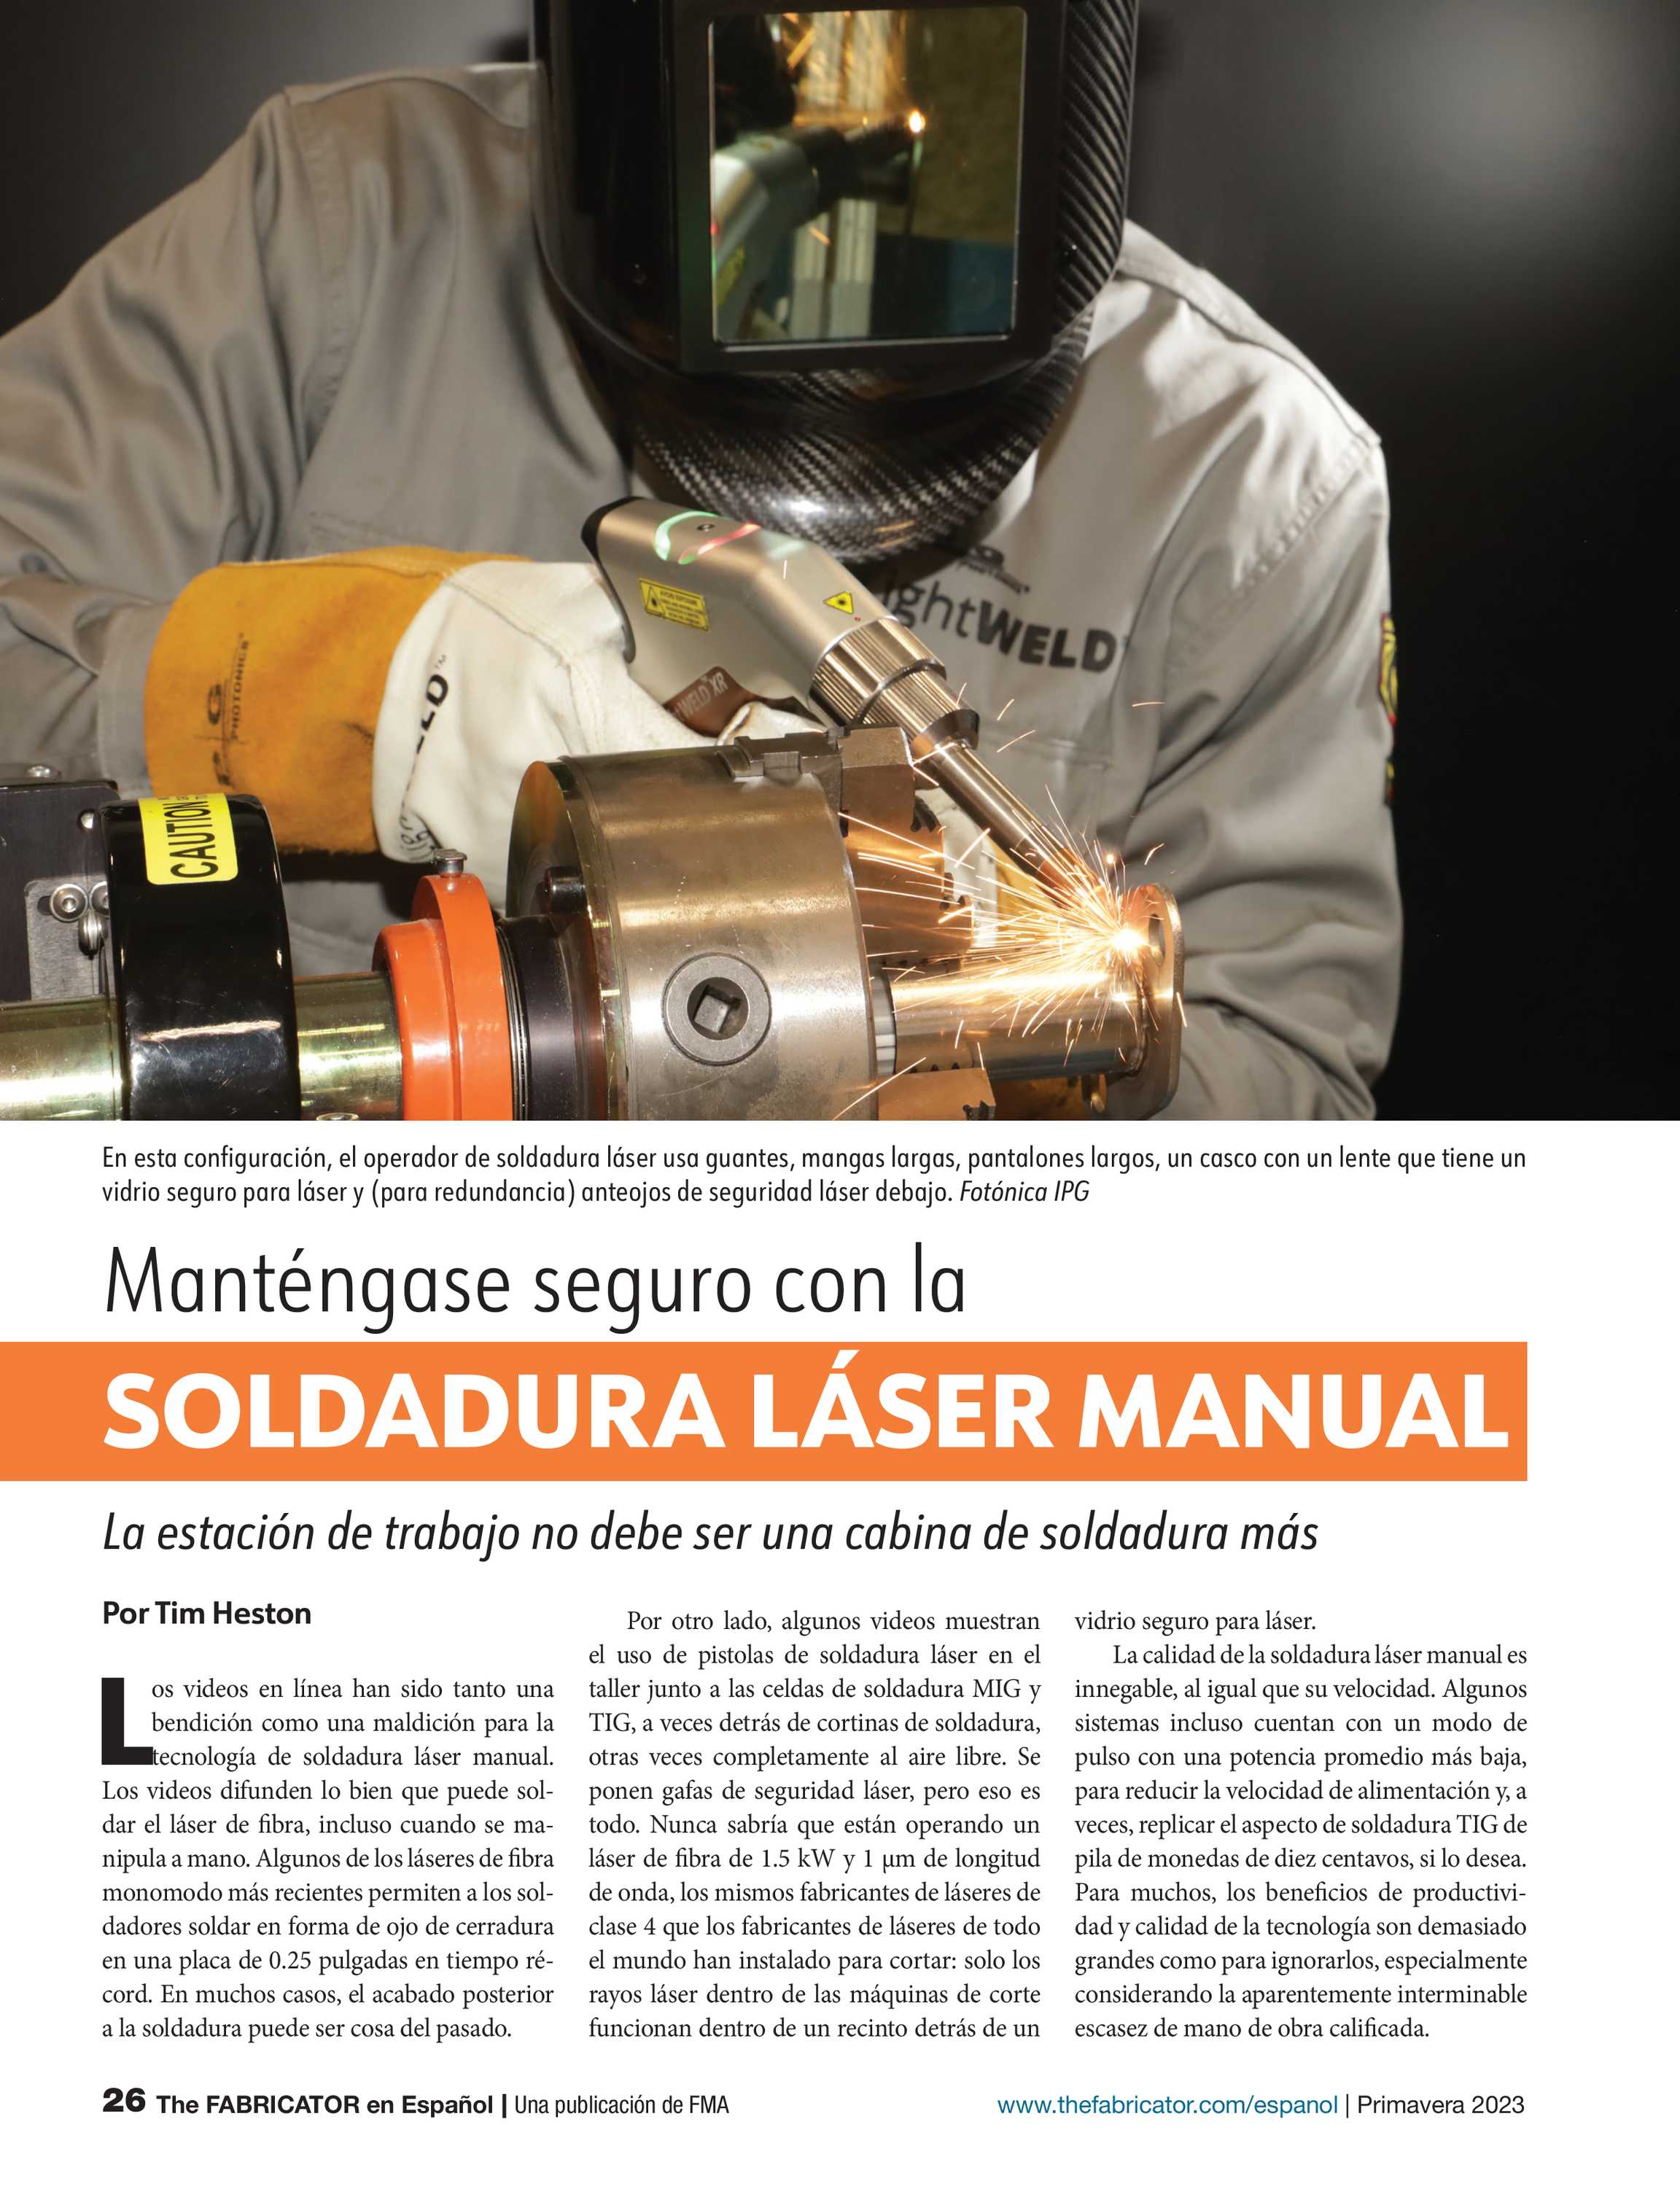 The Fabricator Espanol - Spring 2023 - page 26